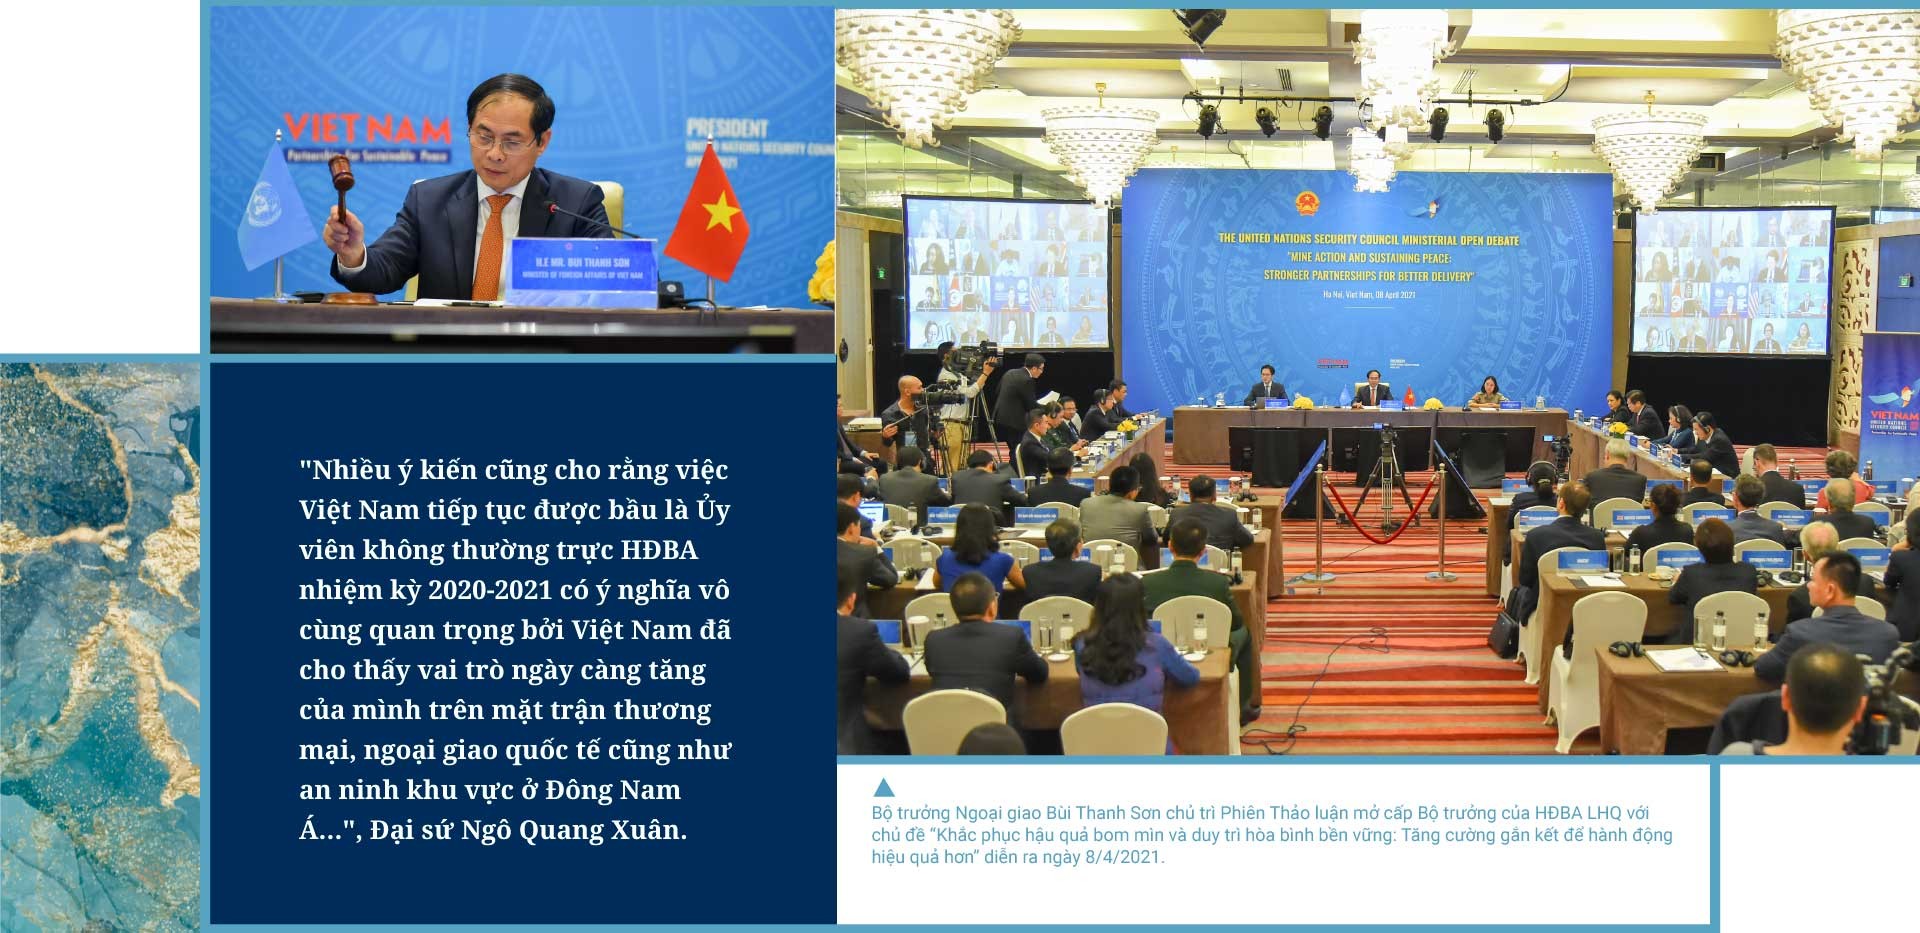 Đại sứ Ngô Quang Xuân: Việt Nam và Hội đồng Bảo an - Phía trước vẫn còn cả chặng đường dài